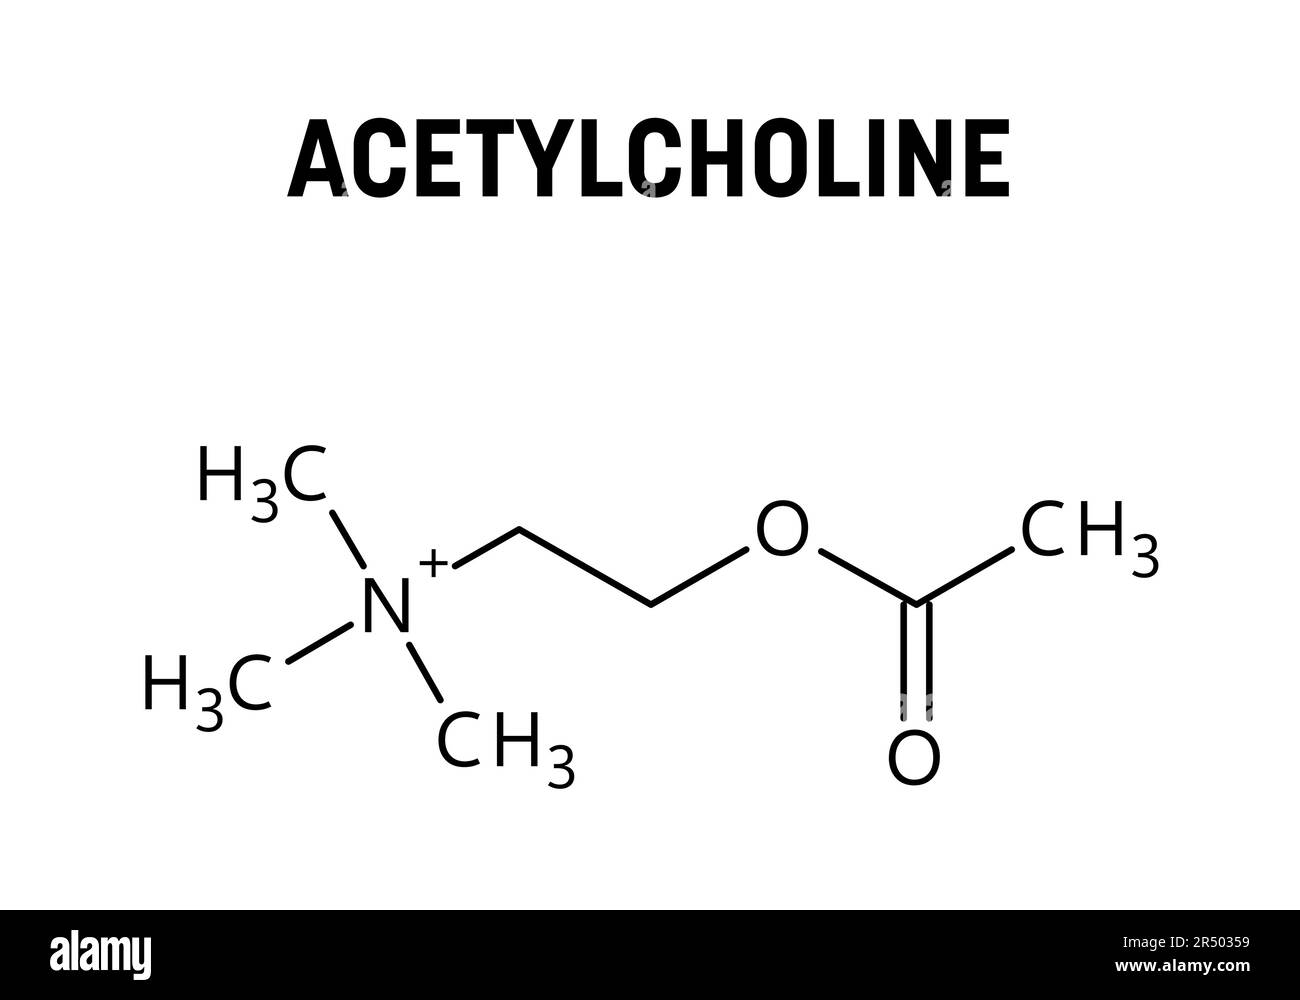 Die Molekularstruktur des Acetylcholins. Acetylcholin ist ein Neurotransmitter, der im menschlichen Körper eine wichtige Rolle spielt. Vektorstrukturformel der chemischen Verbindung. Stock Vektor